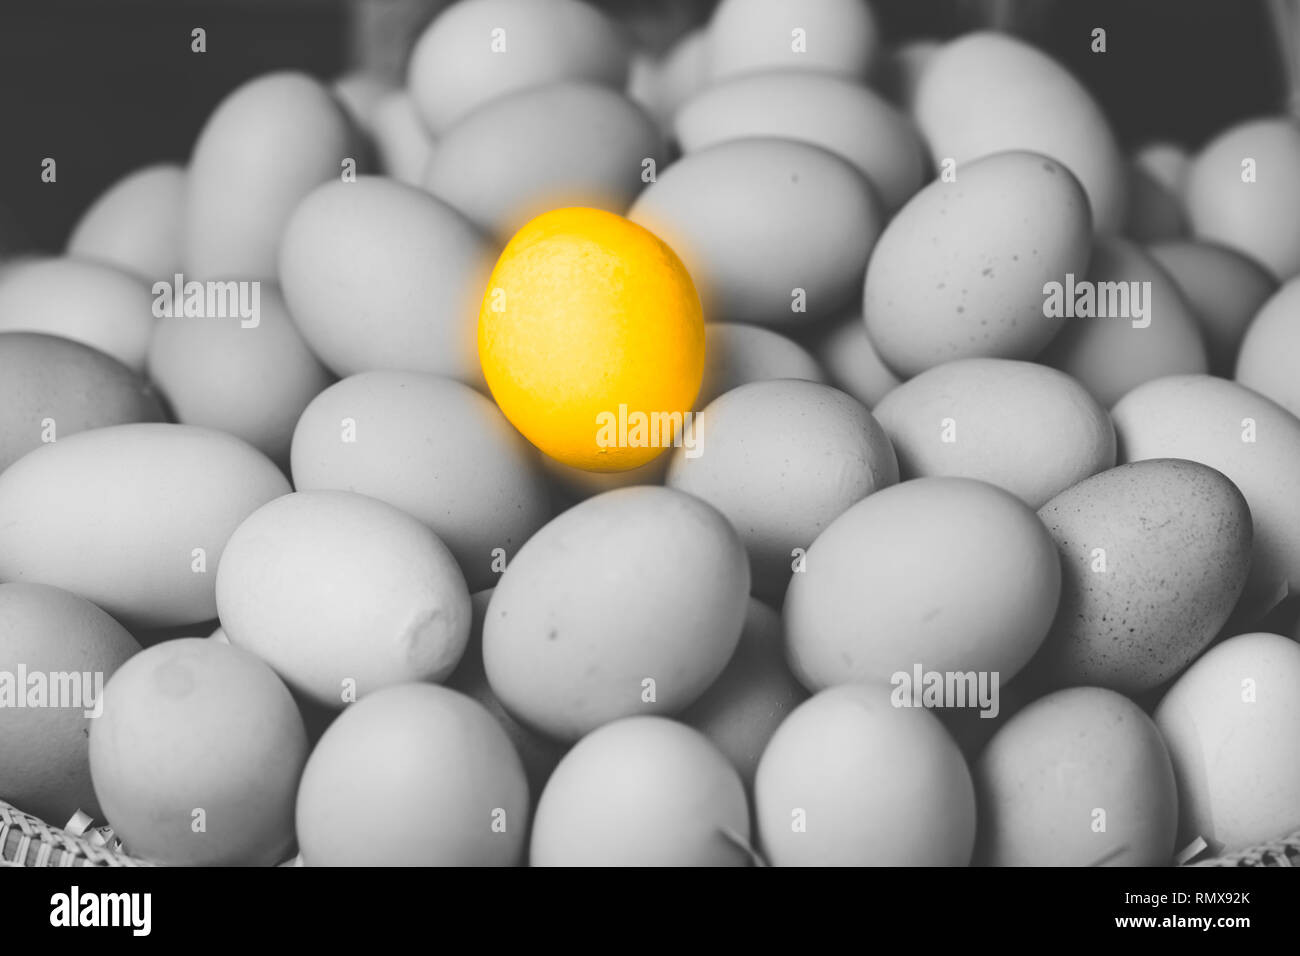 Goldene Ei für den Unterschied, der eindeutige Marktführer hervorragende Leistung person Konzept. Stockfoto